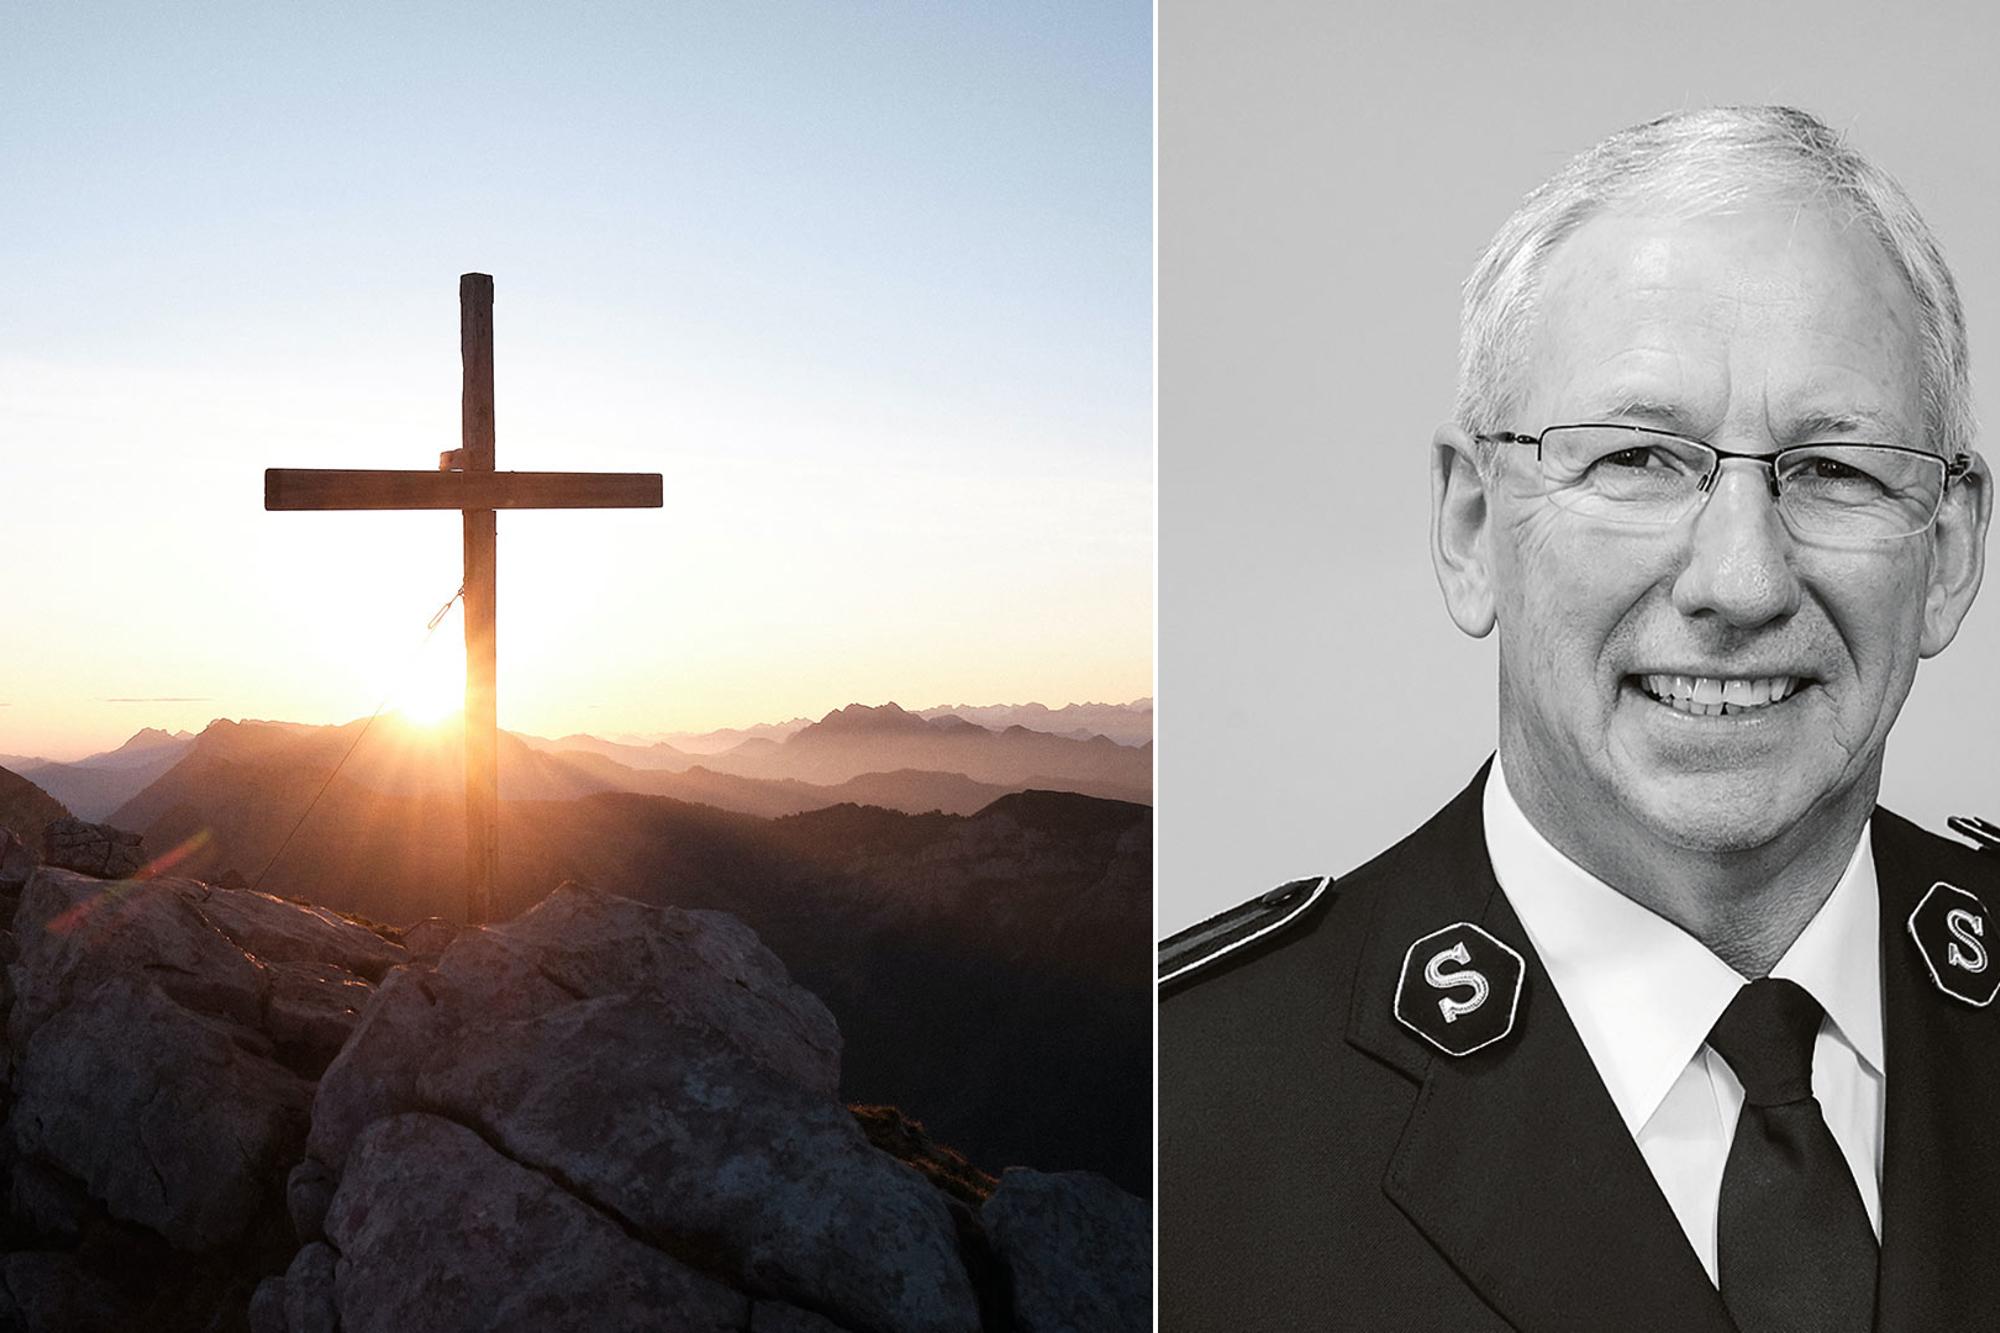 Till vänster: Ett kors som står uppe på ett berg. I bakgrunden lyser solstrålar, från en solnedgång, på korset. Till höger: Porträttbild av Brian Peddle.